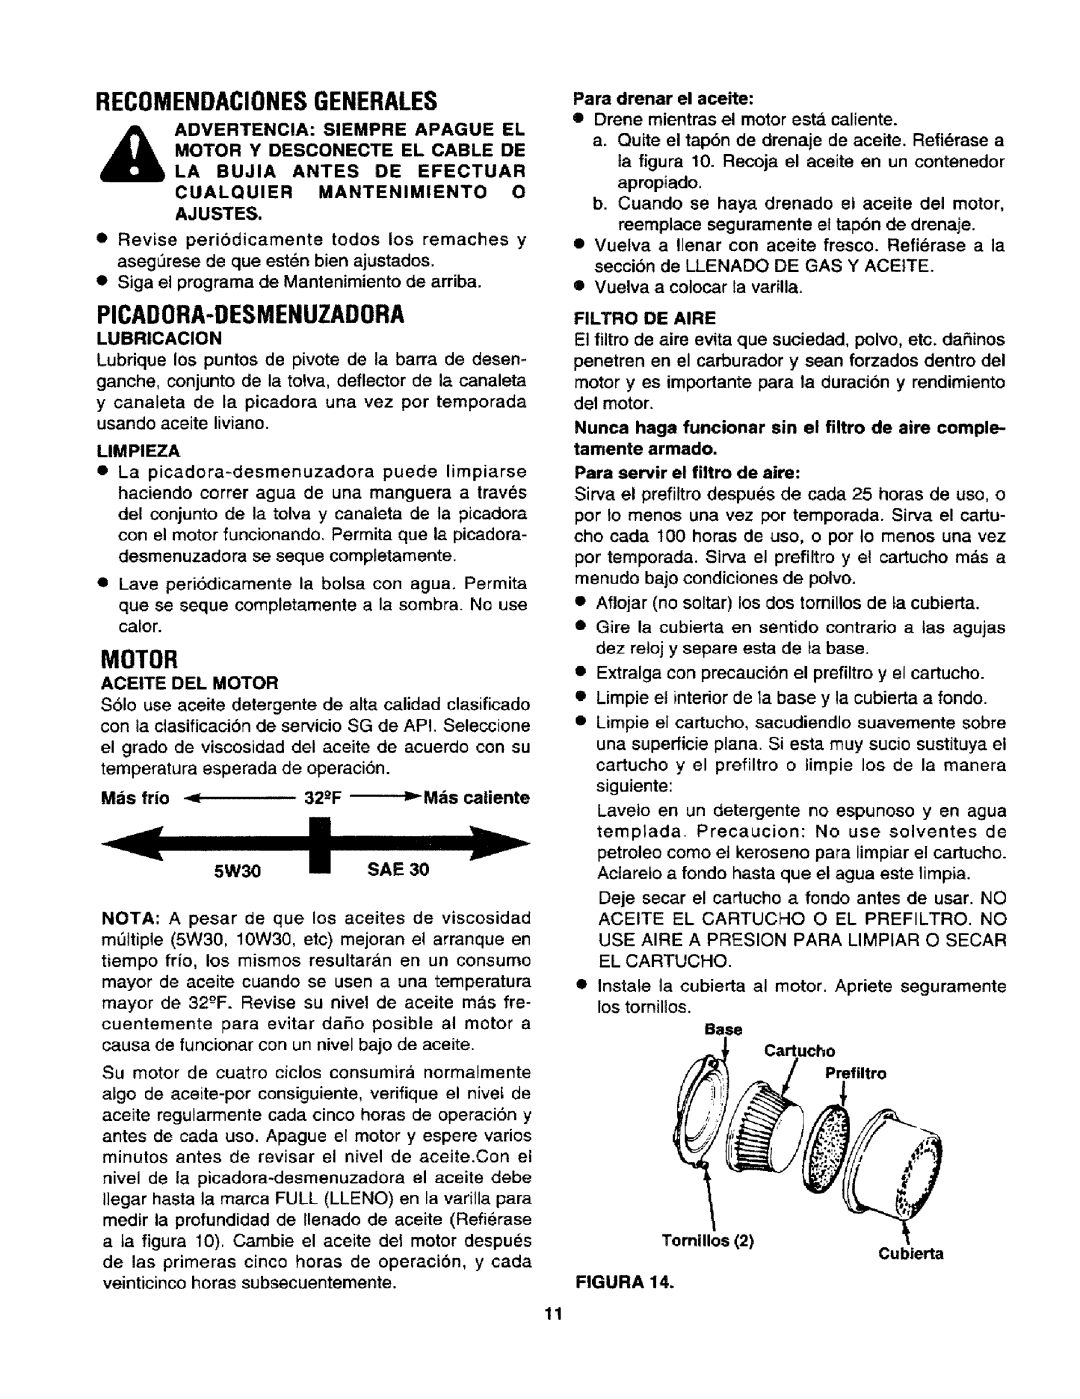 Craftsman 247.795940 manual Recomendacionesgenerales, Picadora-Desmenuzadora, Motor 